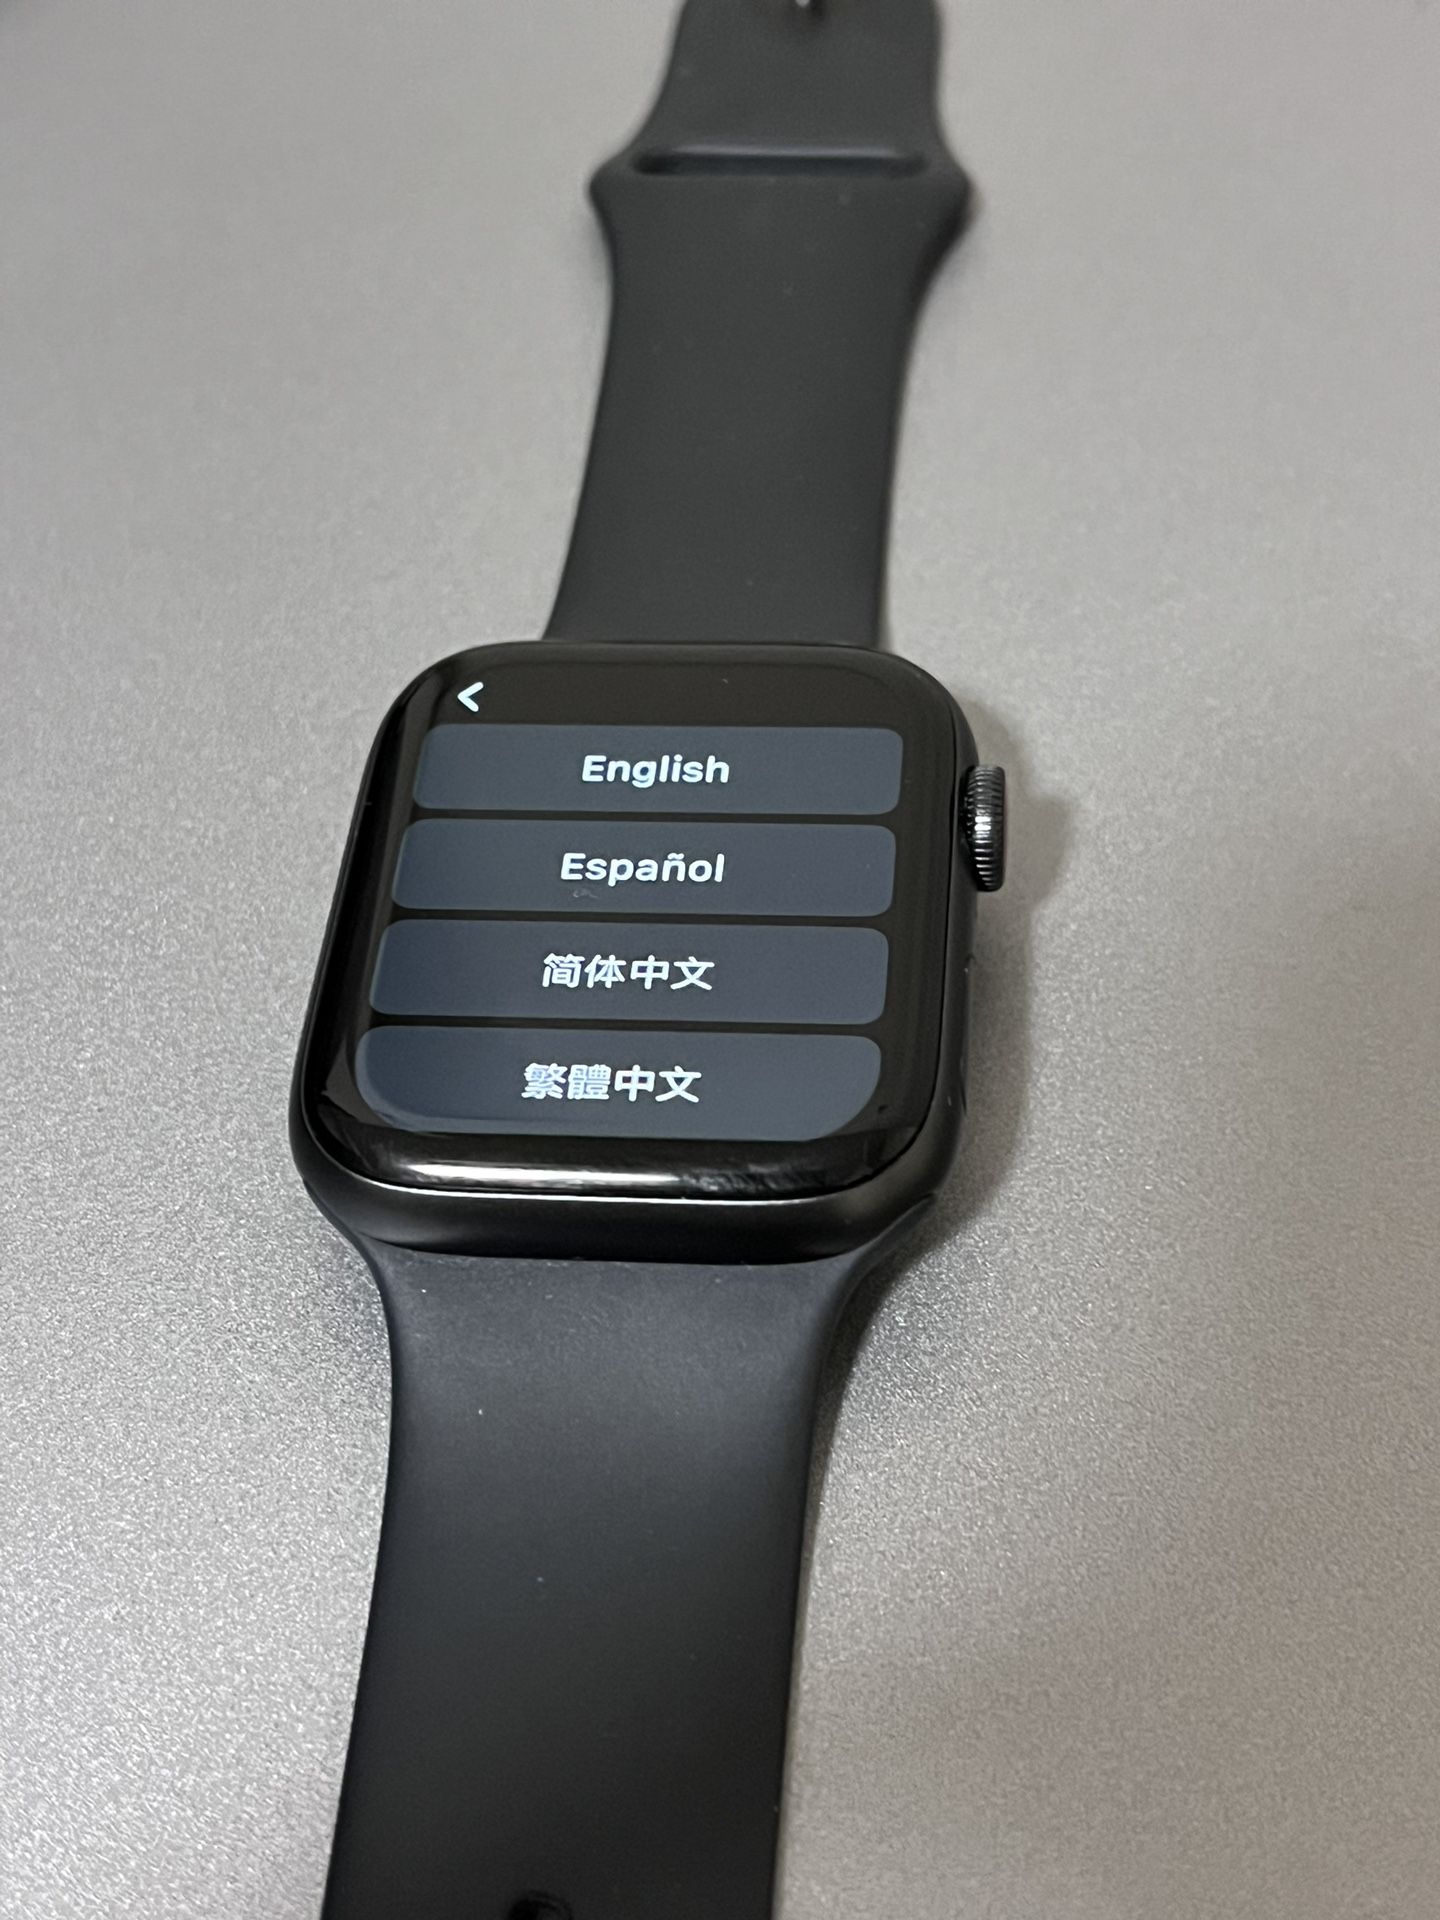 Apple Watch Series 6 Cellular/GPS 44MM Aluminum/Ceramic